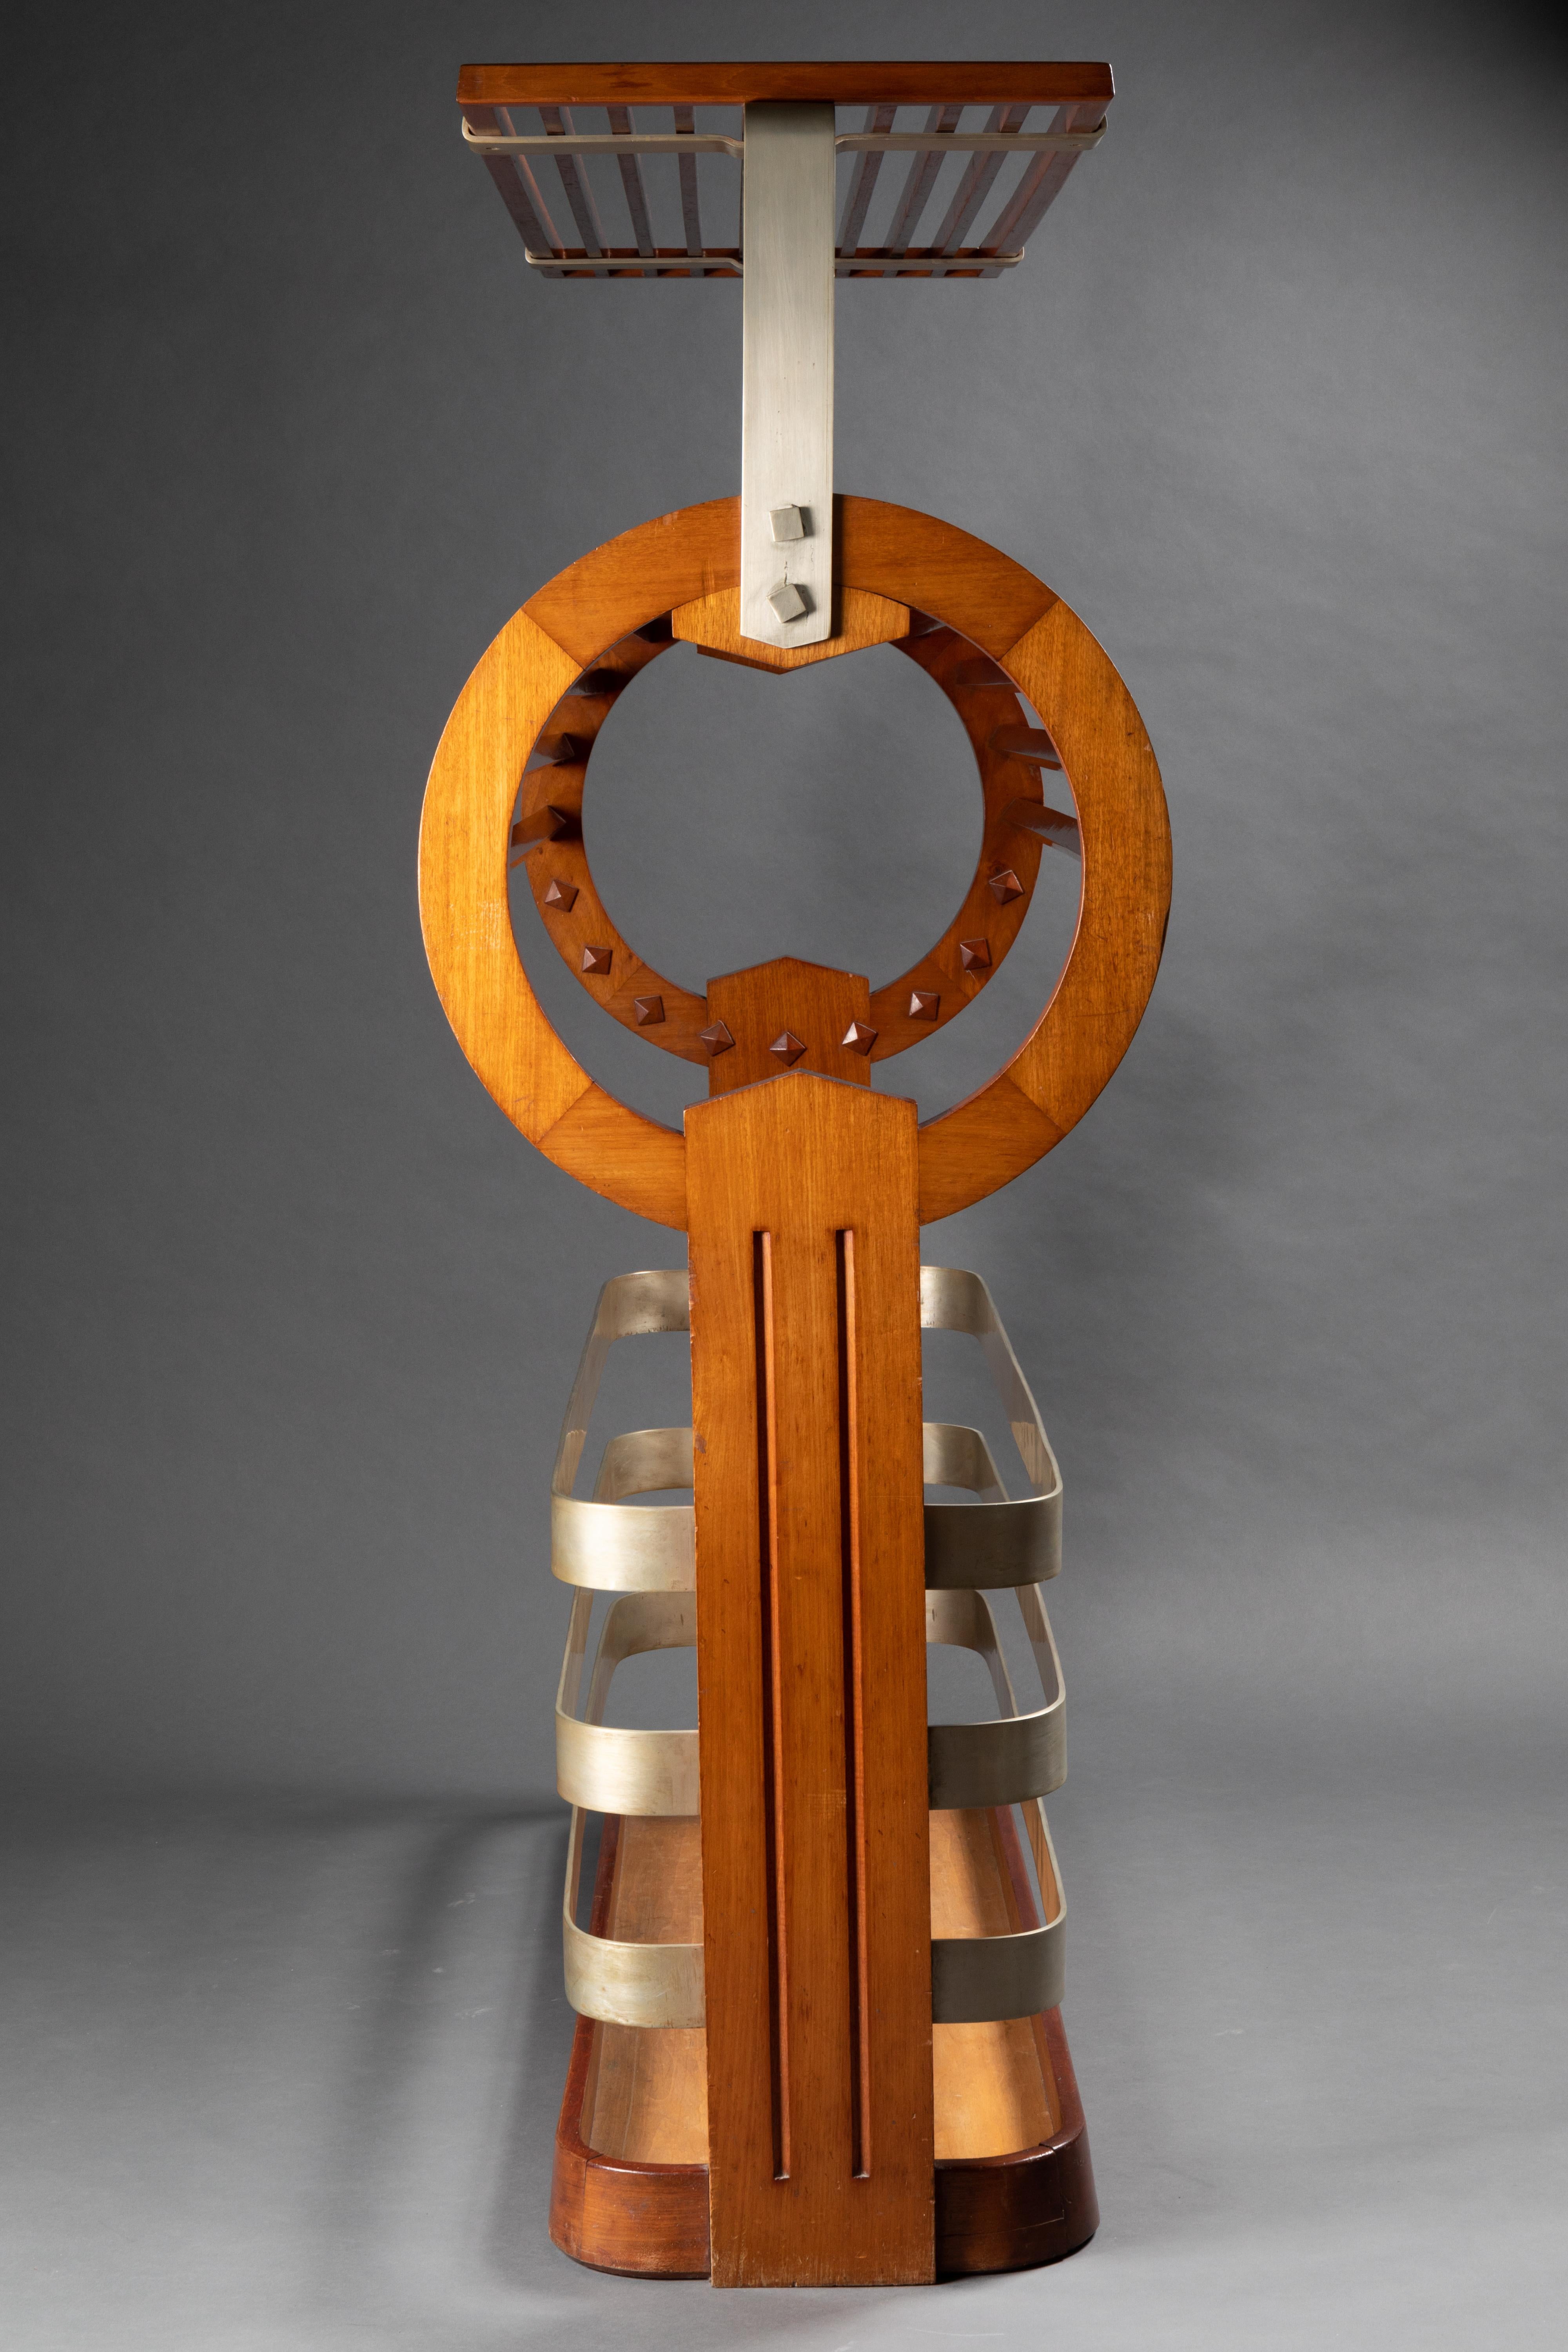 Jette-Habits gestempelt von Jorj Rual. 
Beeindruckender Kleiderständer aus Holz und Metall. Wunderschön gestaltet und ausgeführt.
Frankreich, um 1935.
